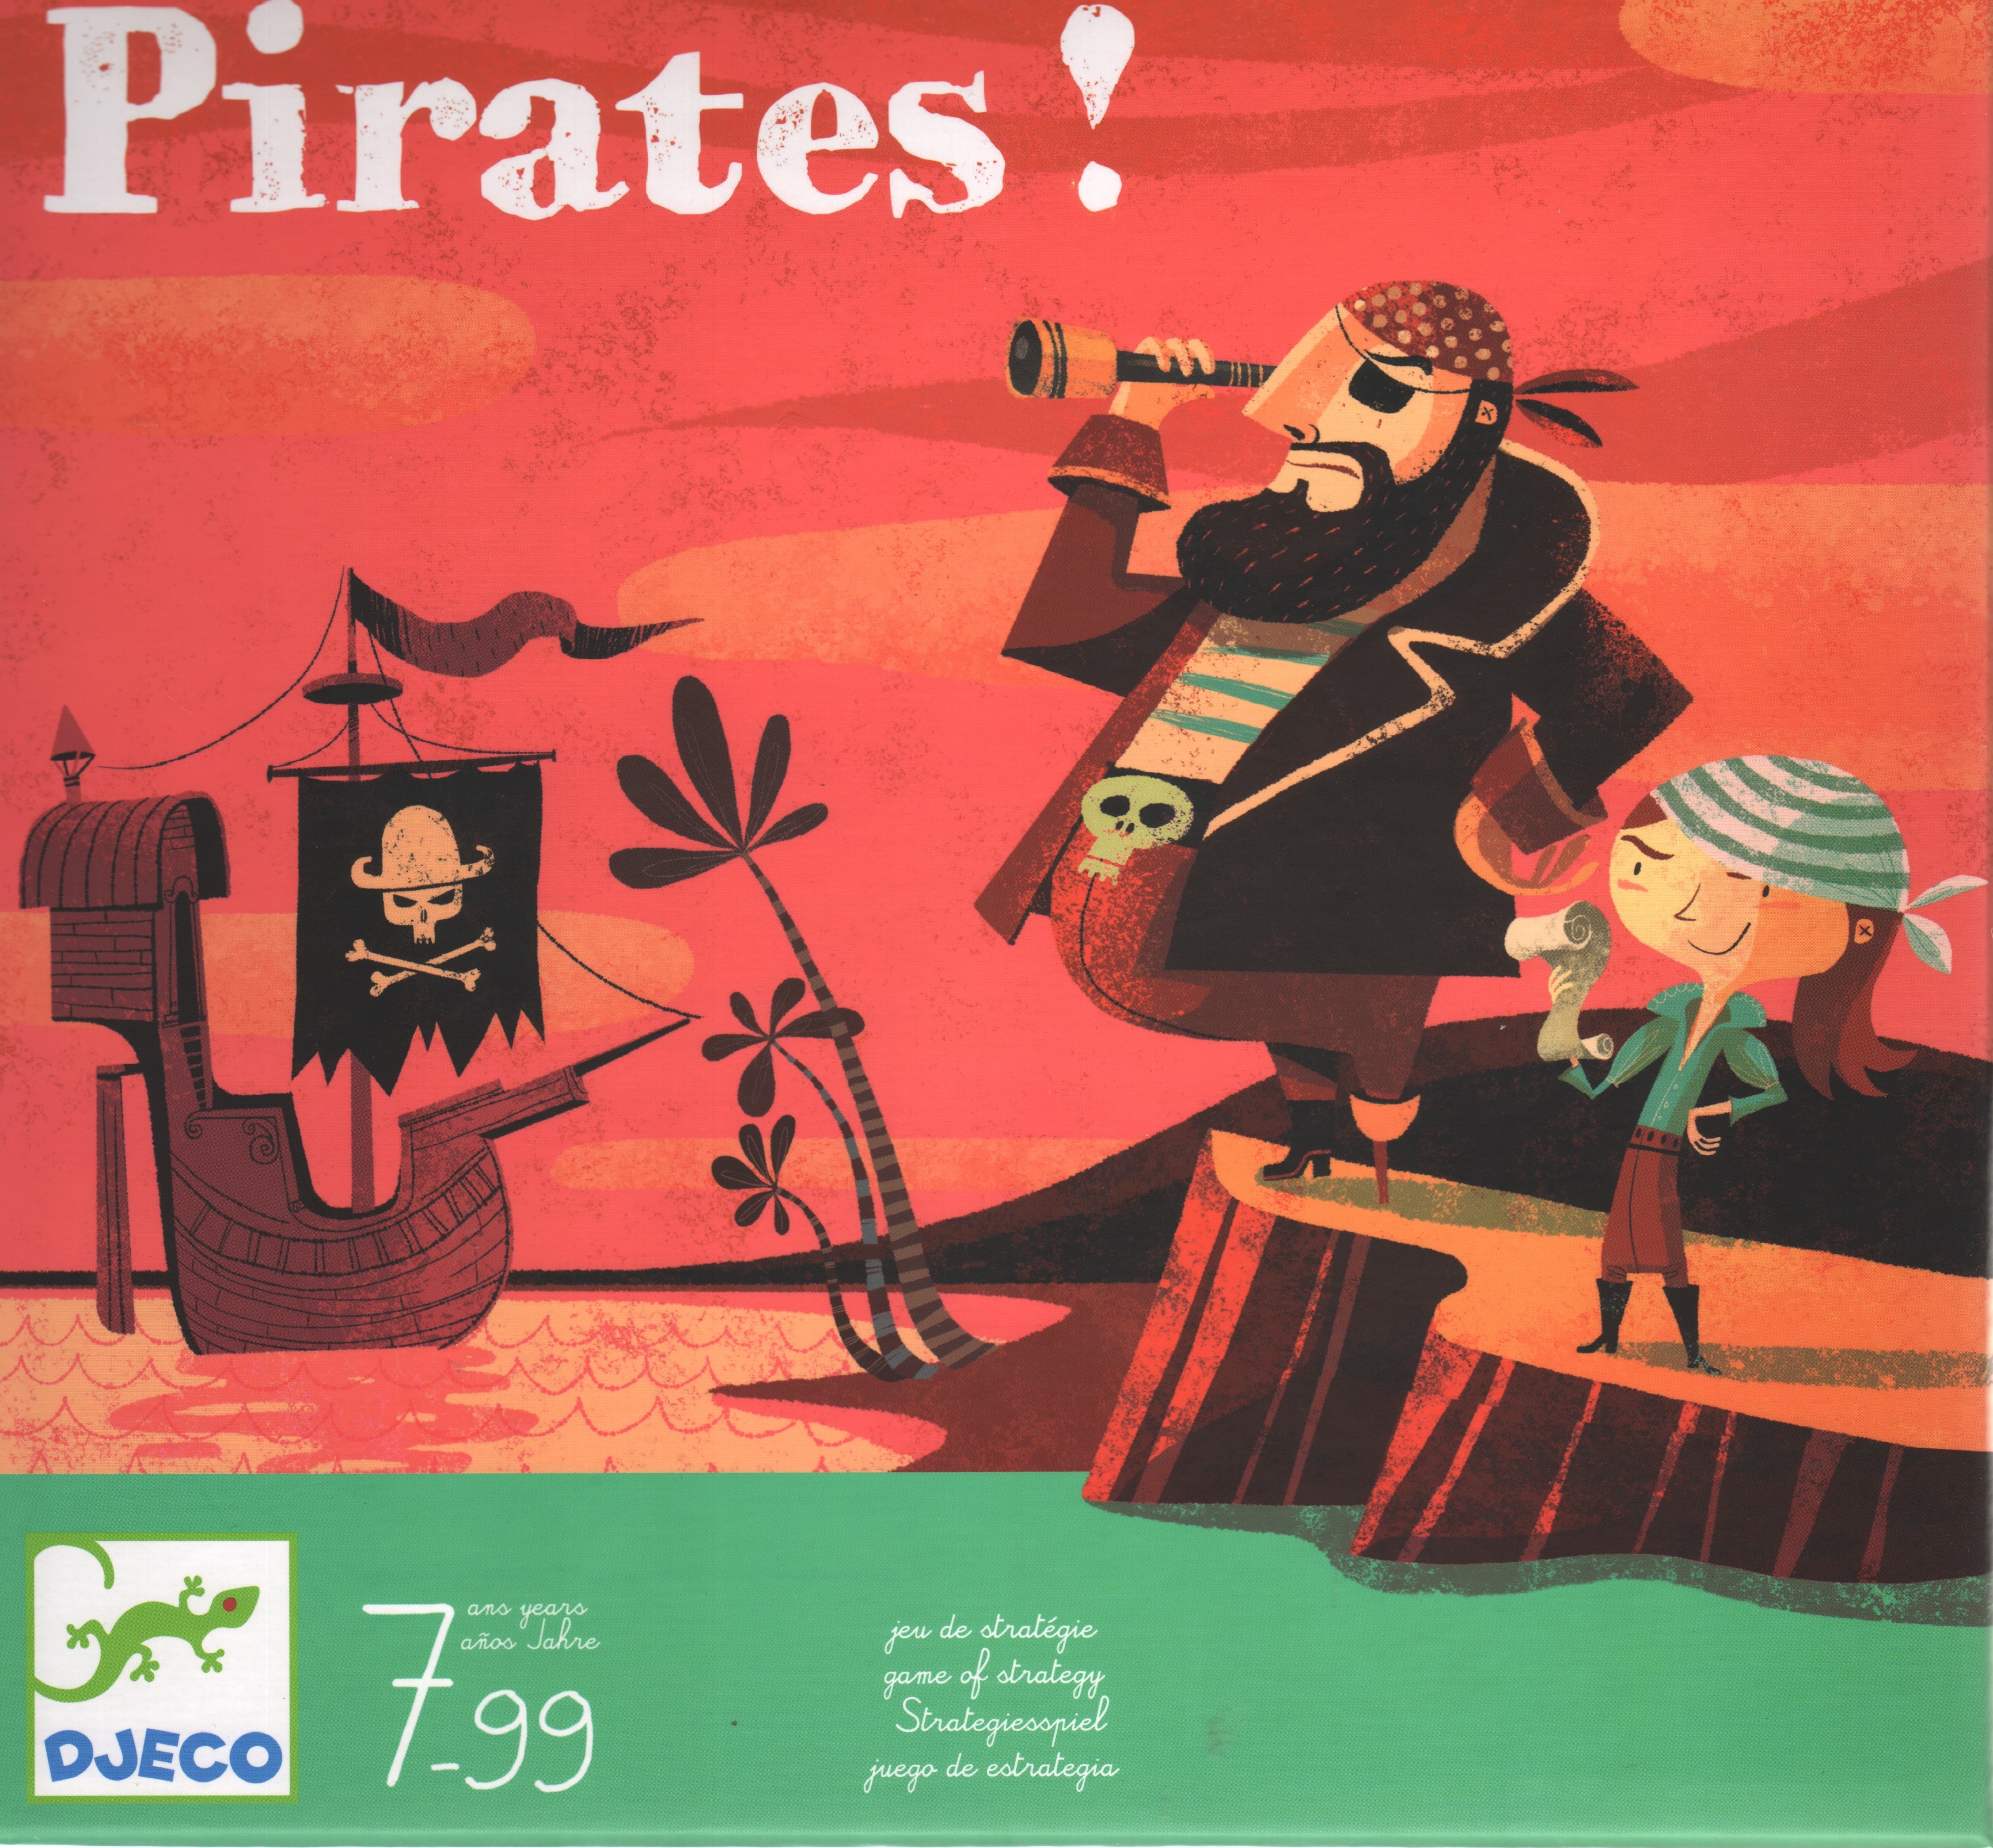 Pirates!